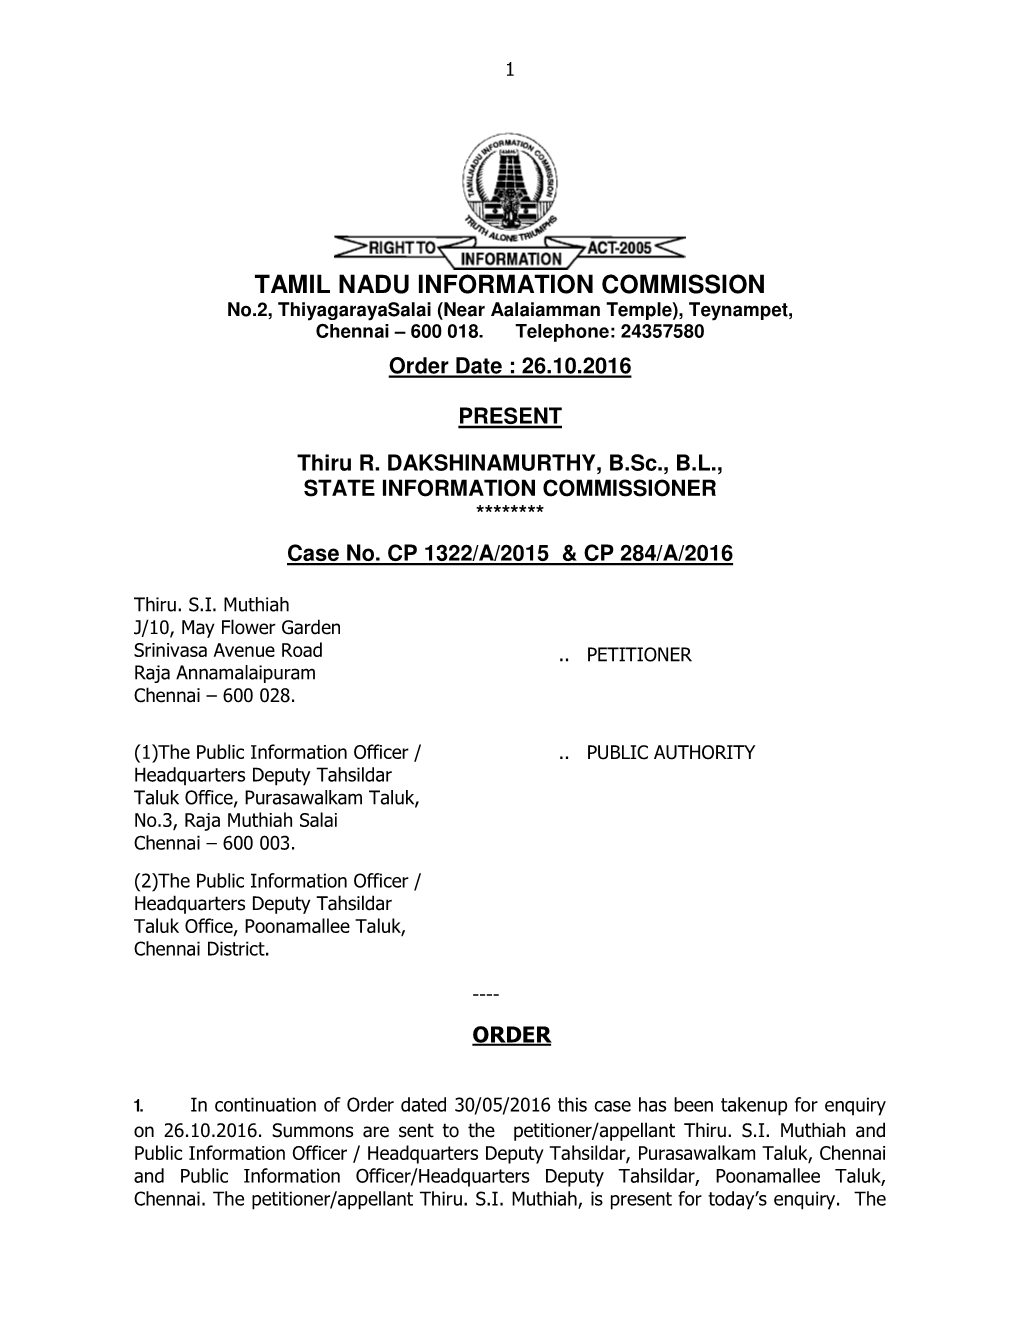 TAMIL NADU INFORMATION COMMISSION No.2, Thiyagarayasalai (Near Aalaiamman Temple), Teynampet, Chennai – 600 018